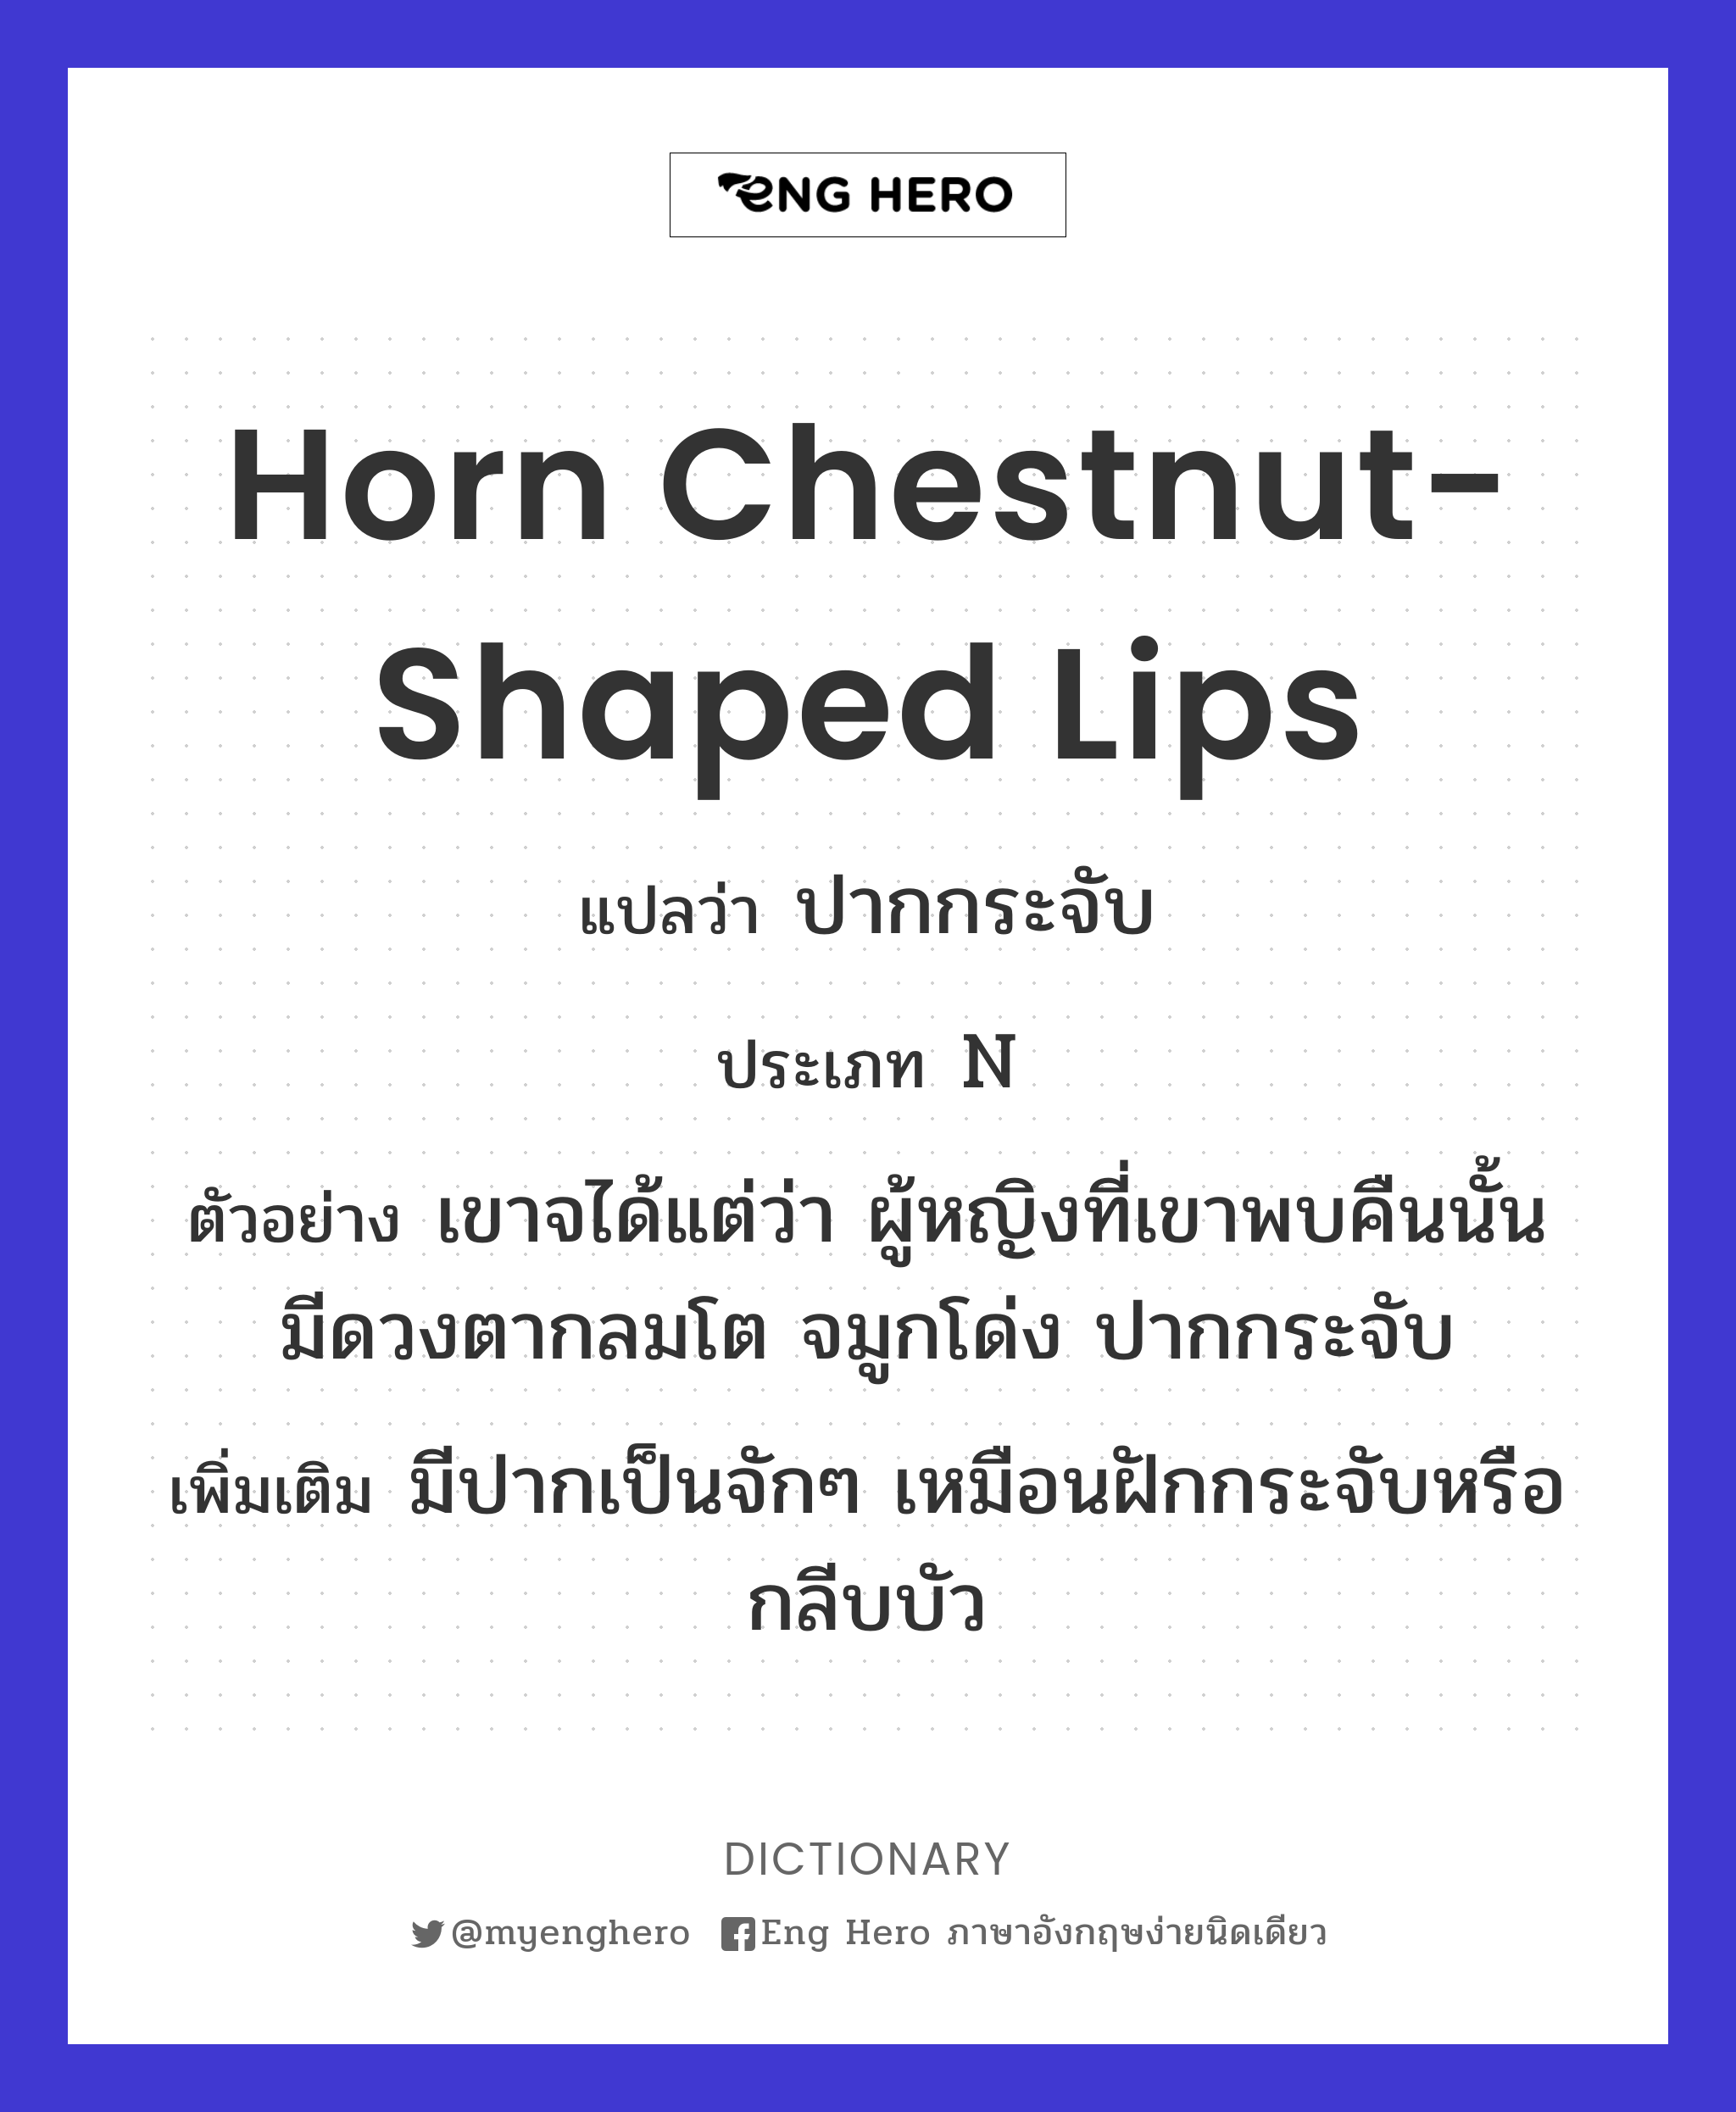 horn chestnut-shaped lips